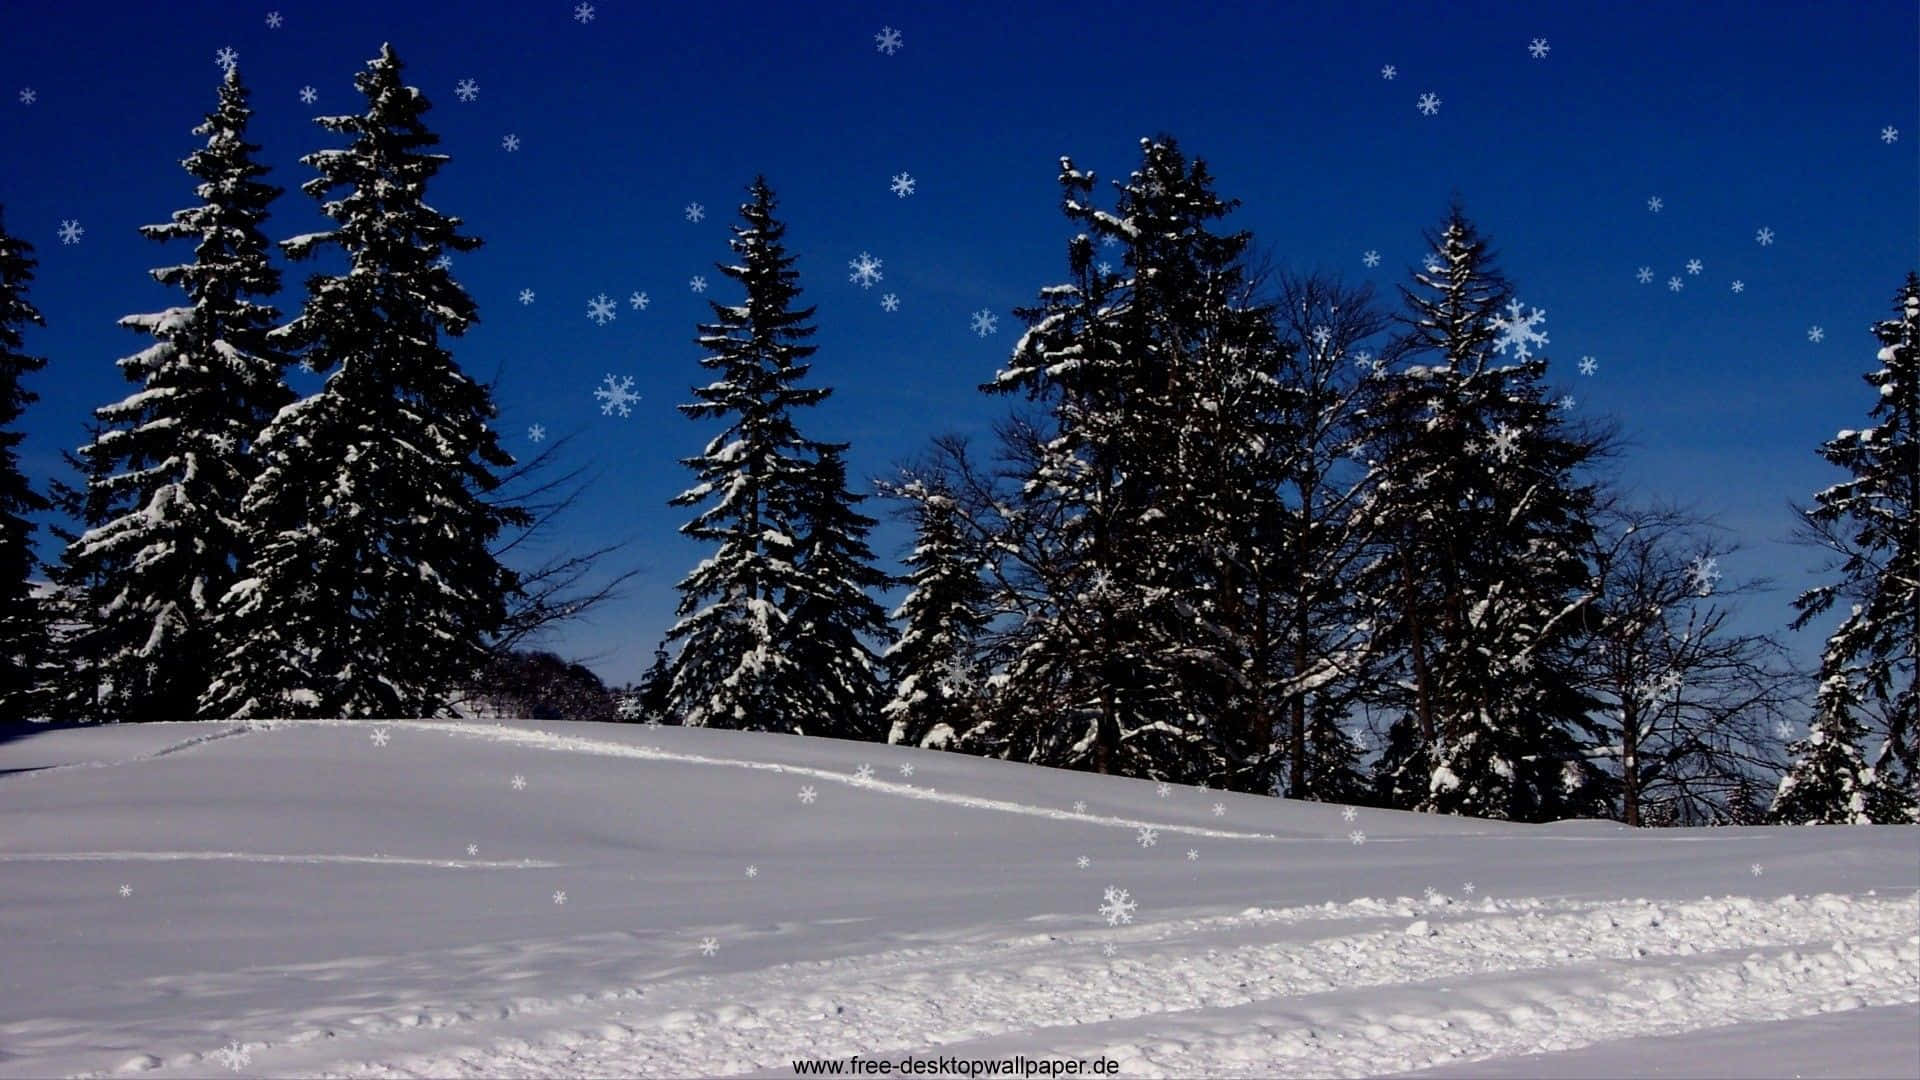 Disfrutade La Belleza Del Invierno Con Este Fondo De Nieve Brillante De Alta Resolución.